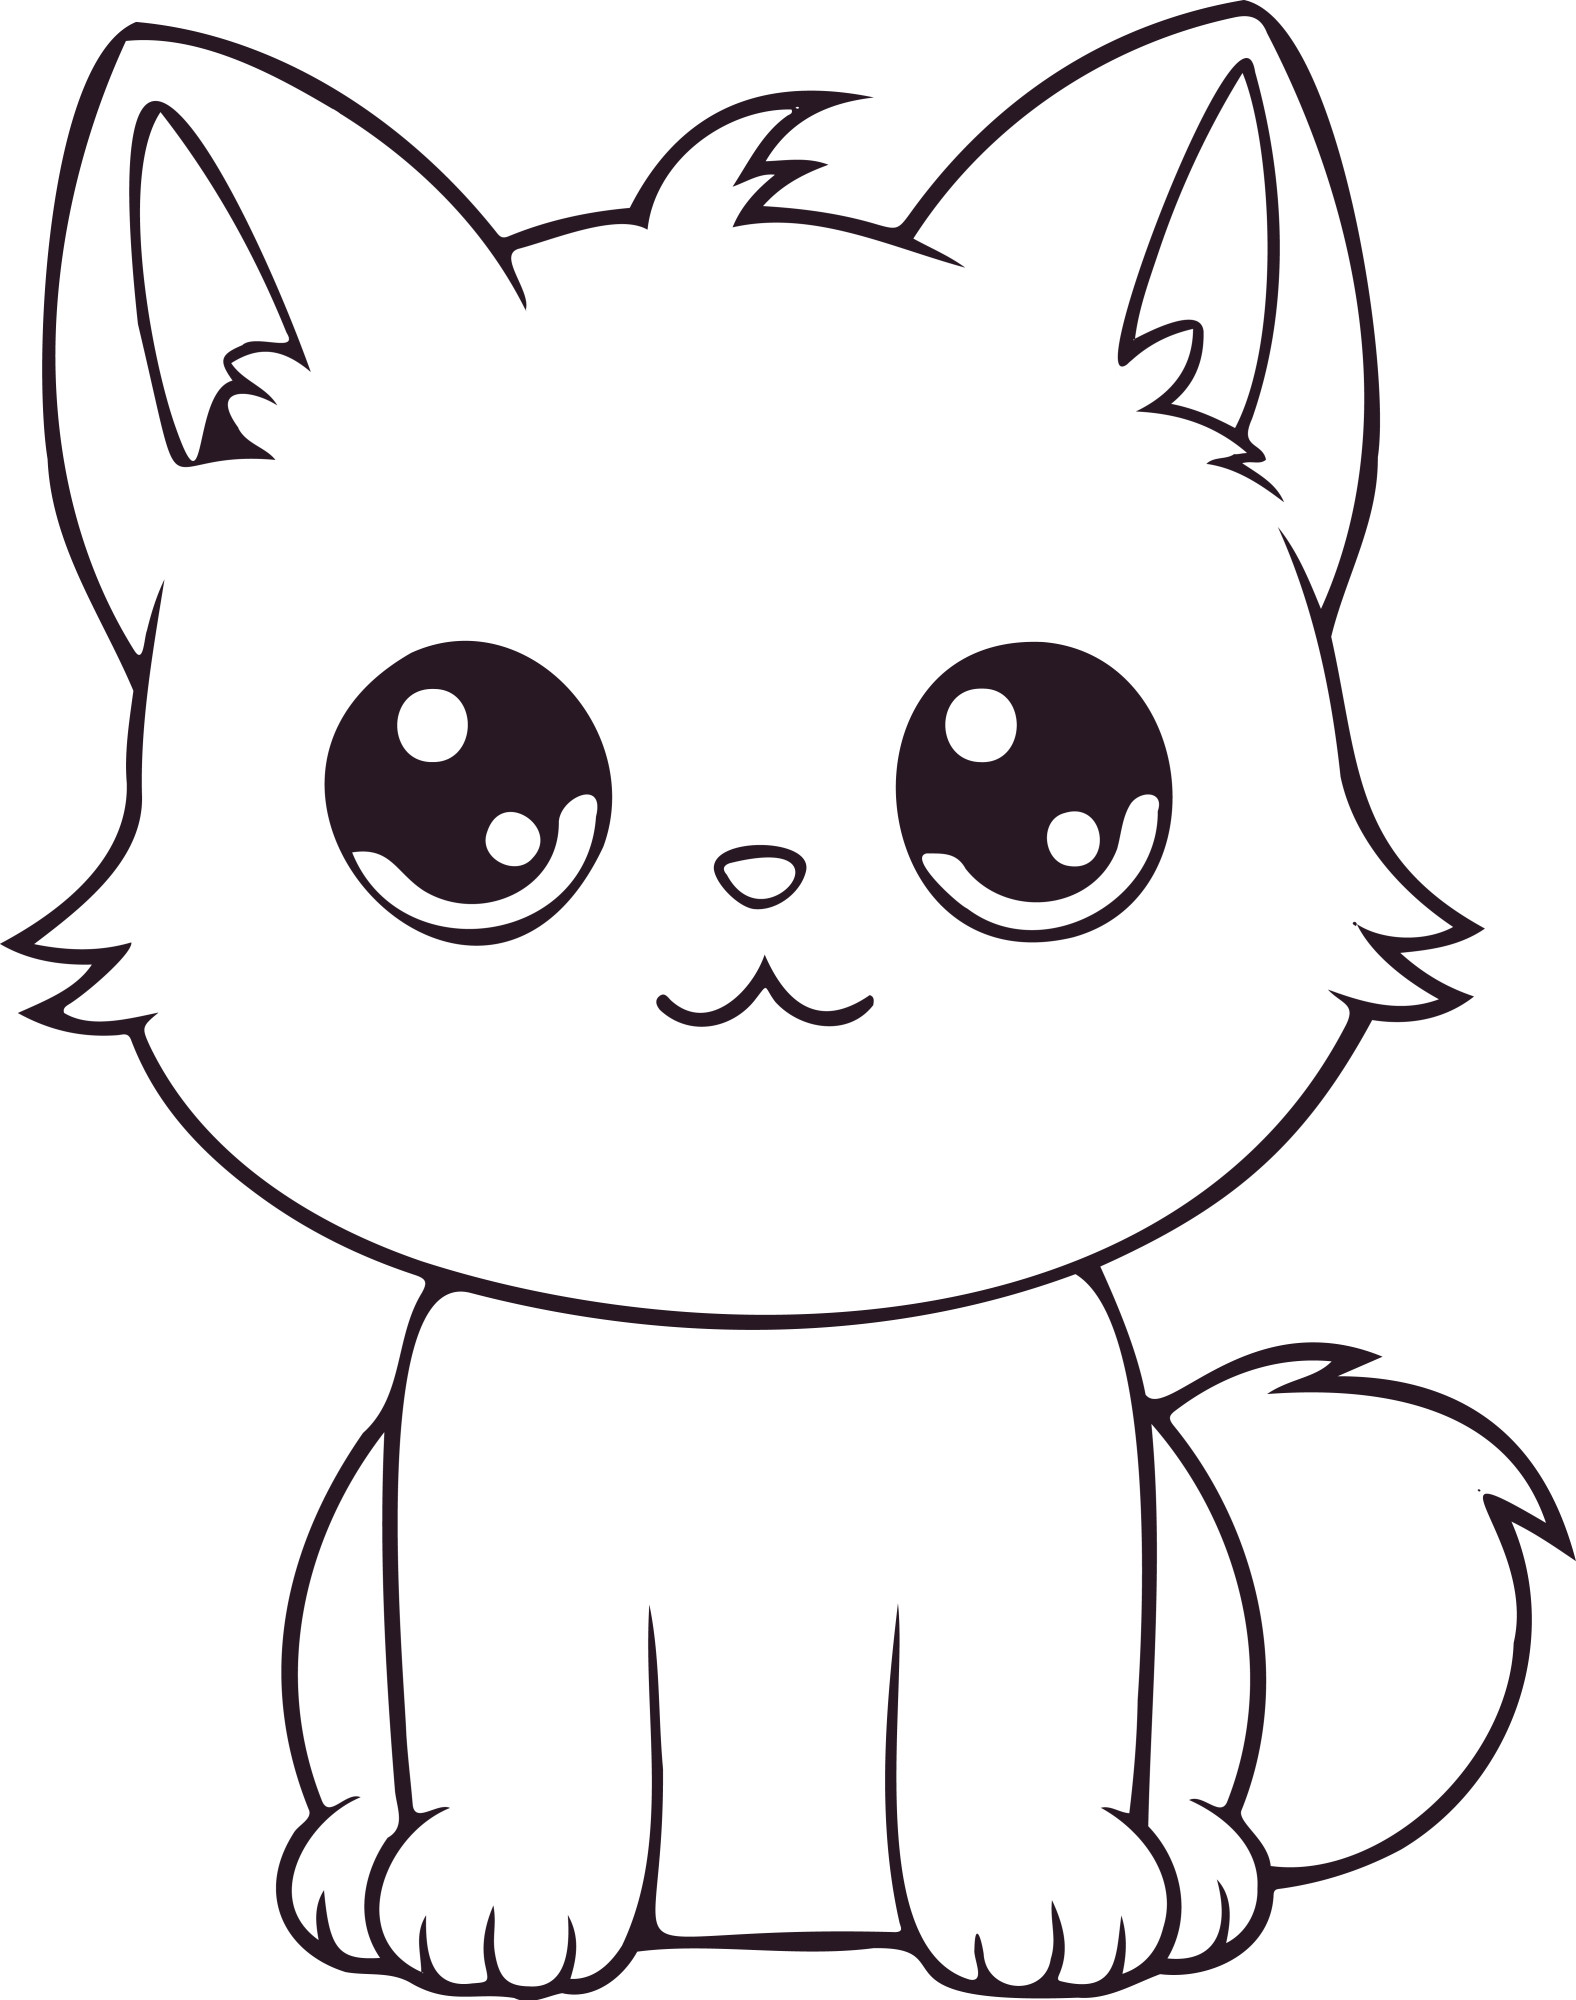 Раскраска для детей: ласковый котик с большими глазами